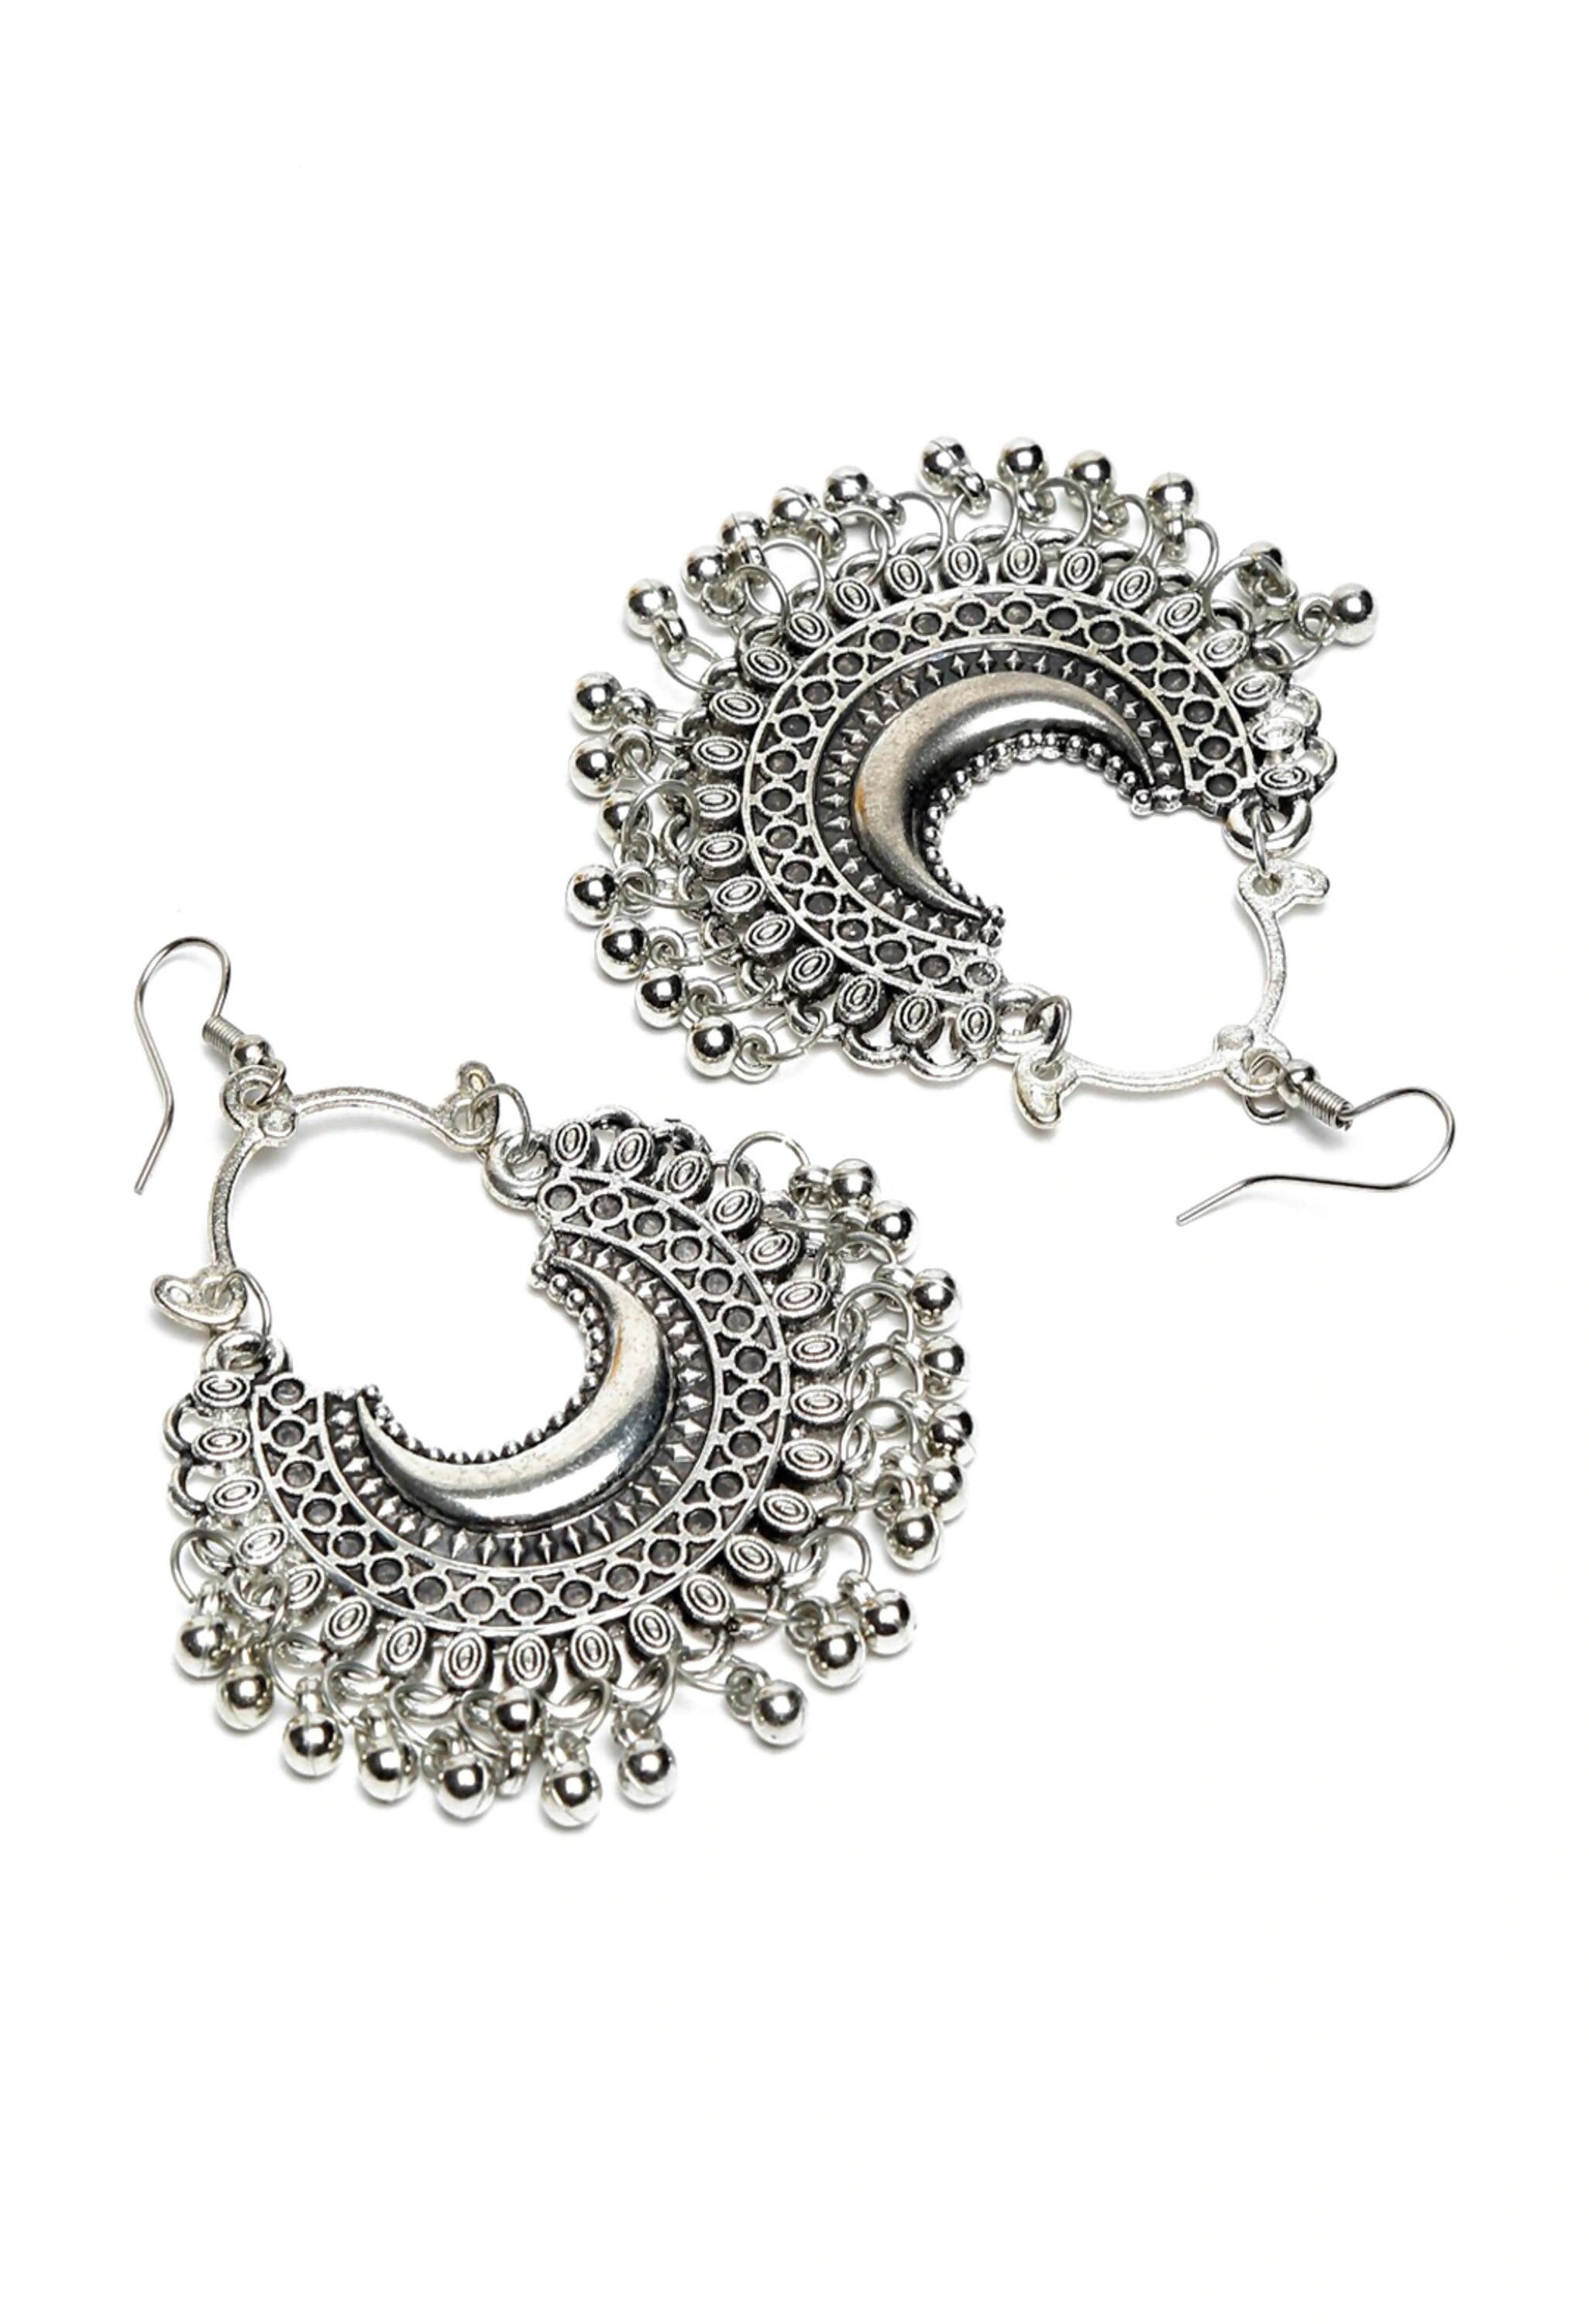 Buy Oxidised Jewellery Online! – Khushi Handicrafts